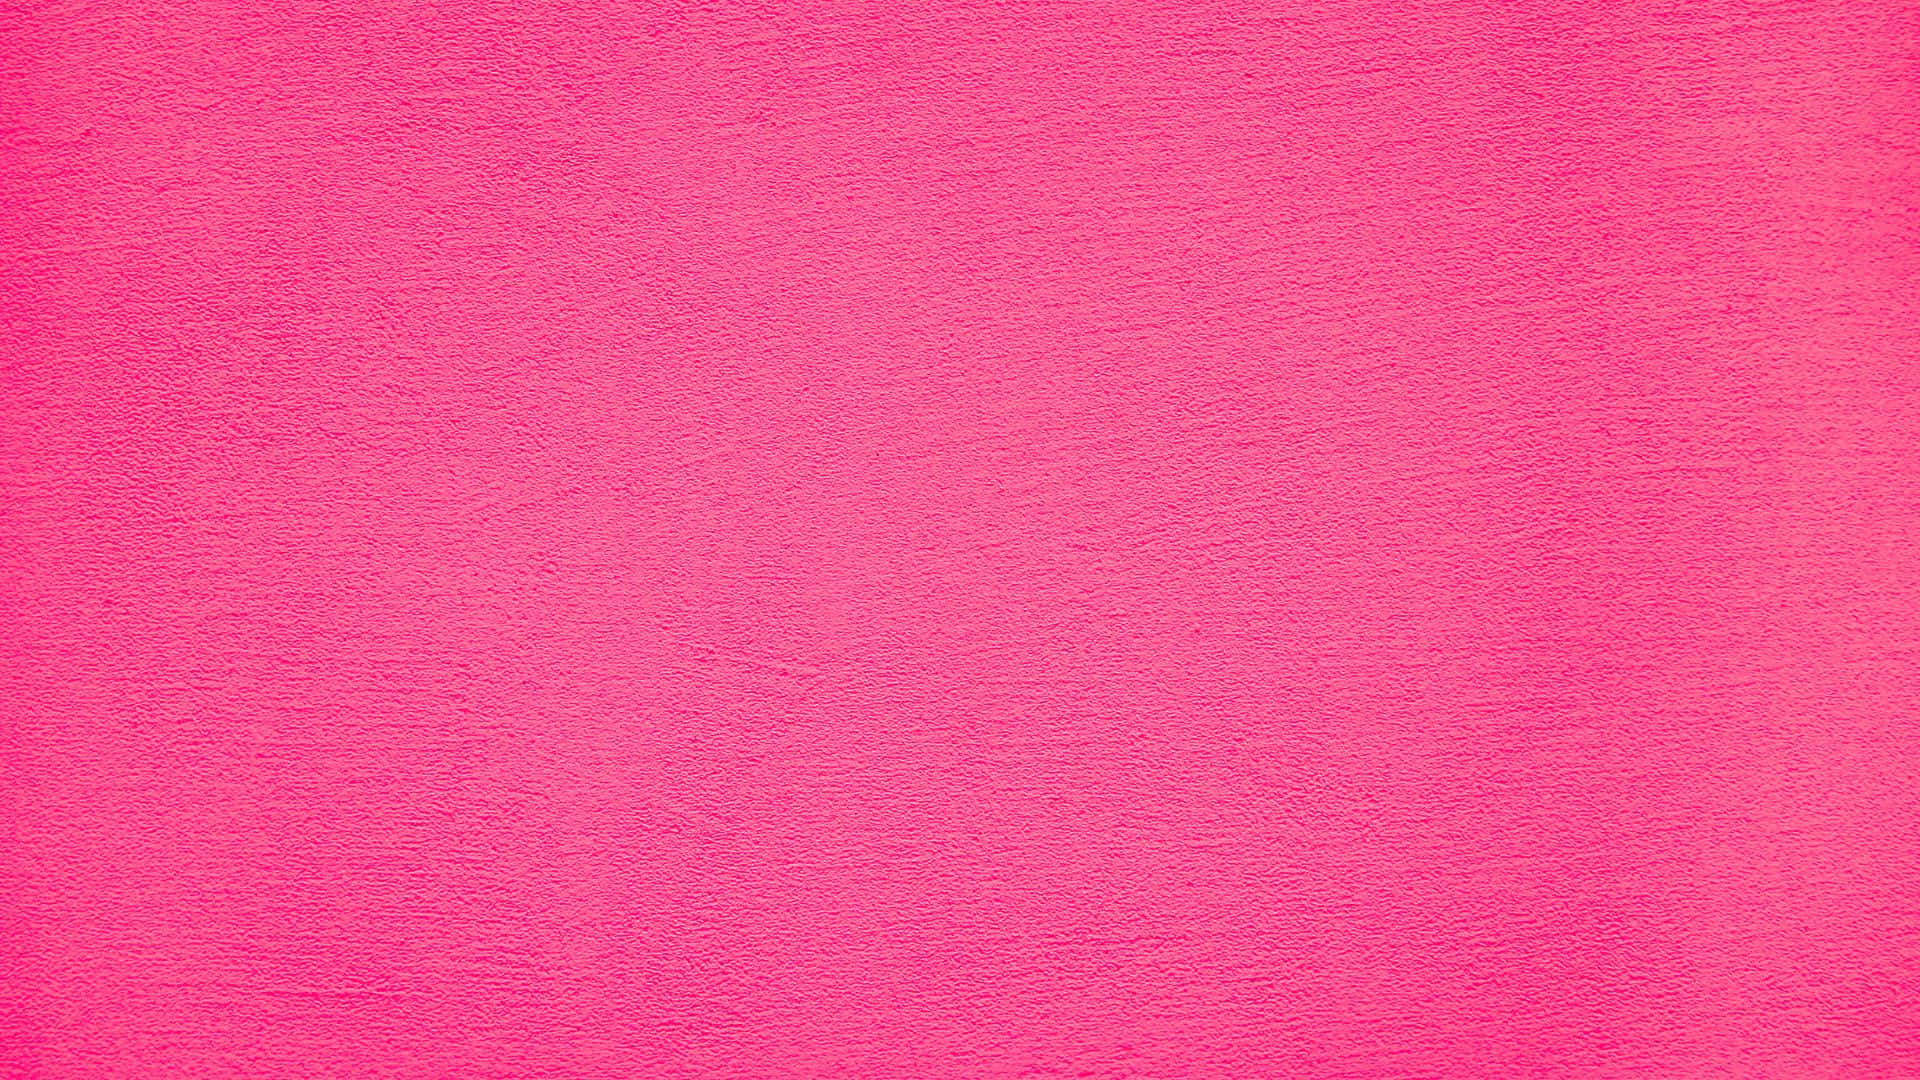 Fondode Pantalla De Textura Rosa. Fondo de pantalla